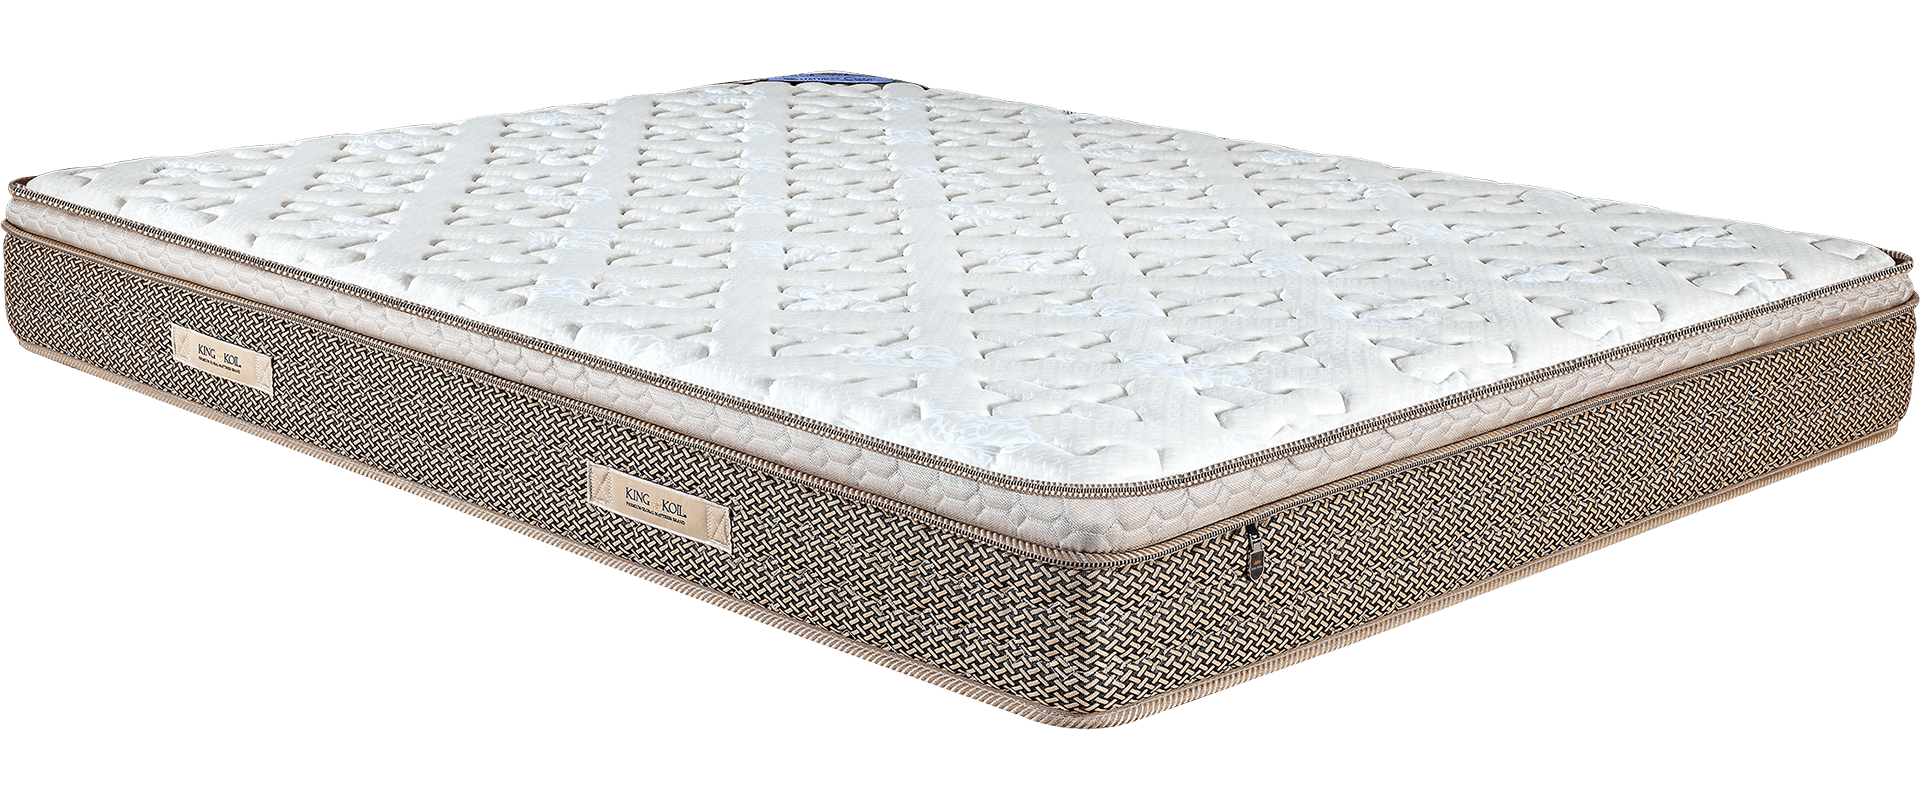 best non designer mattress